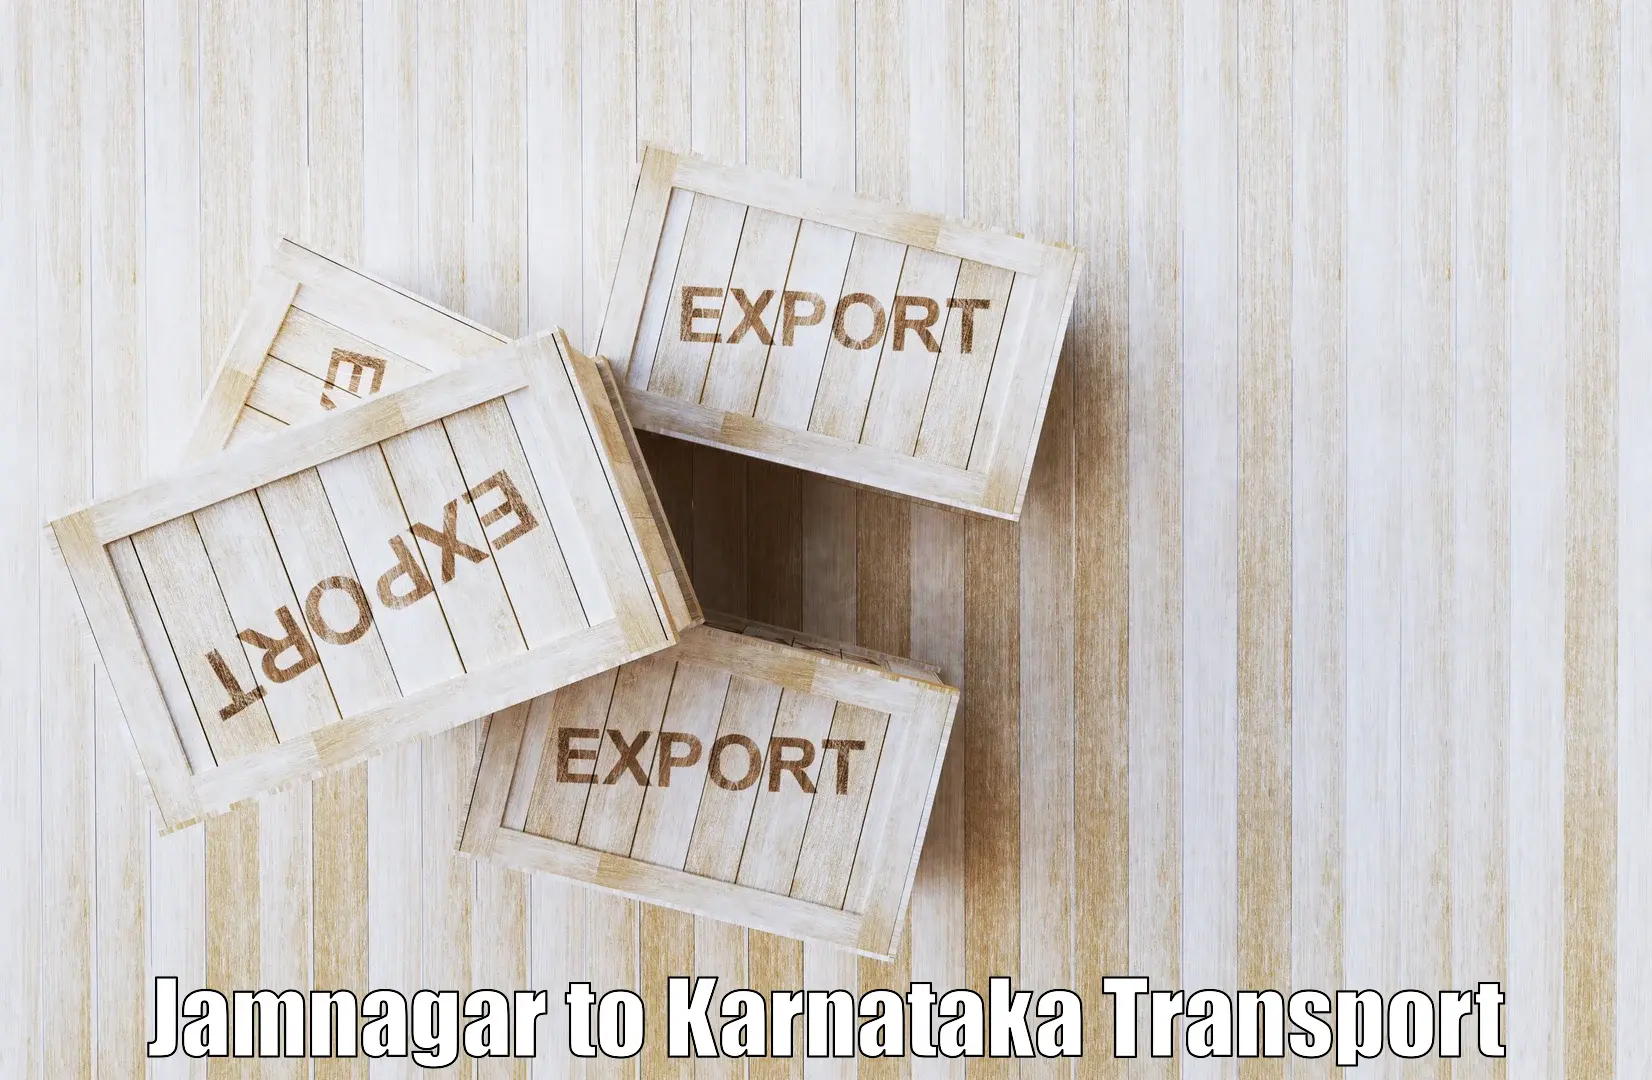 Logistics transportation services Jamnagar to Karwar